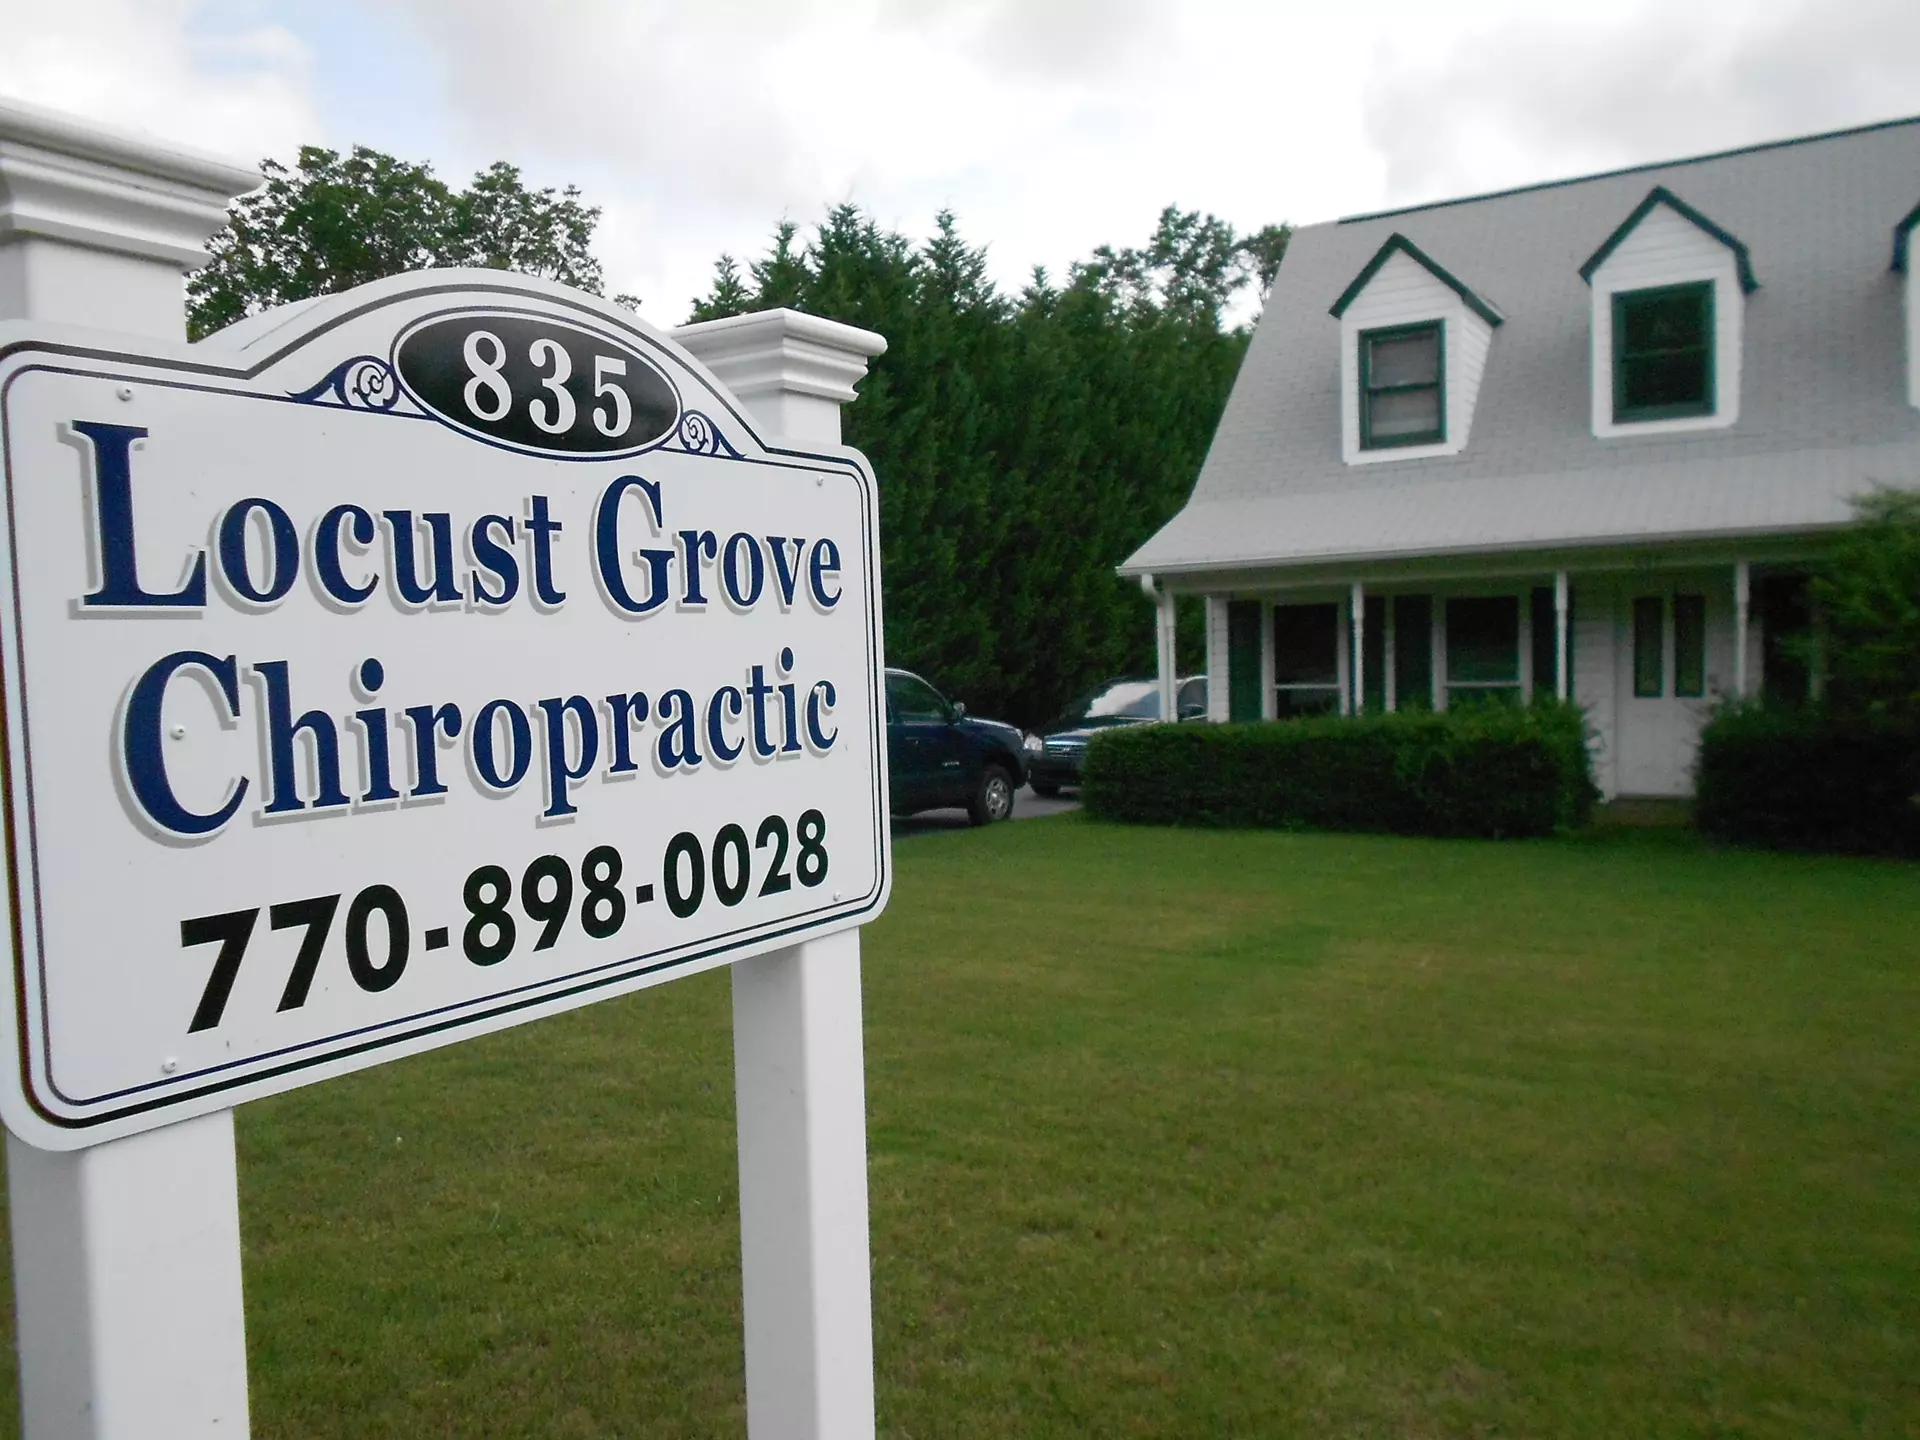 Chiropractor in Locust Grove, GA